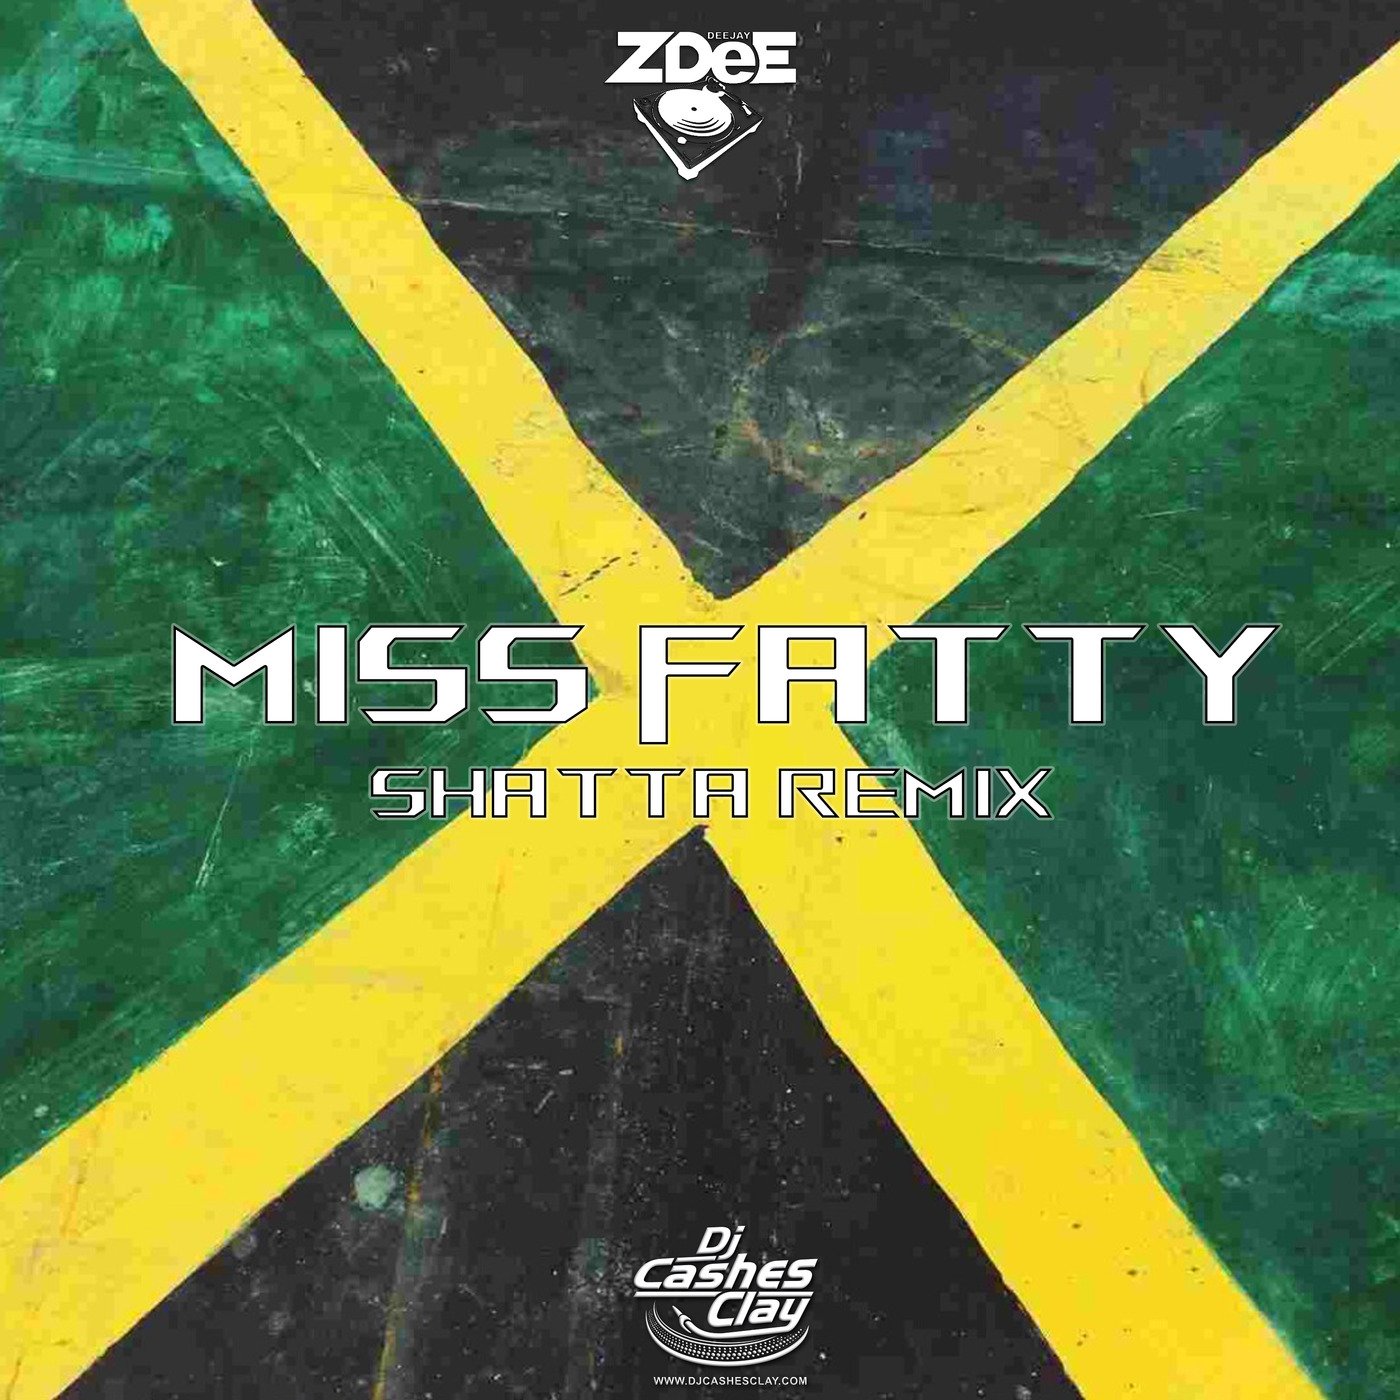 Dj Cashesclay & Dj ZDee - Miss Fatty Shatta Remix